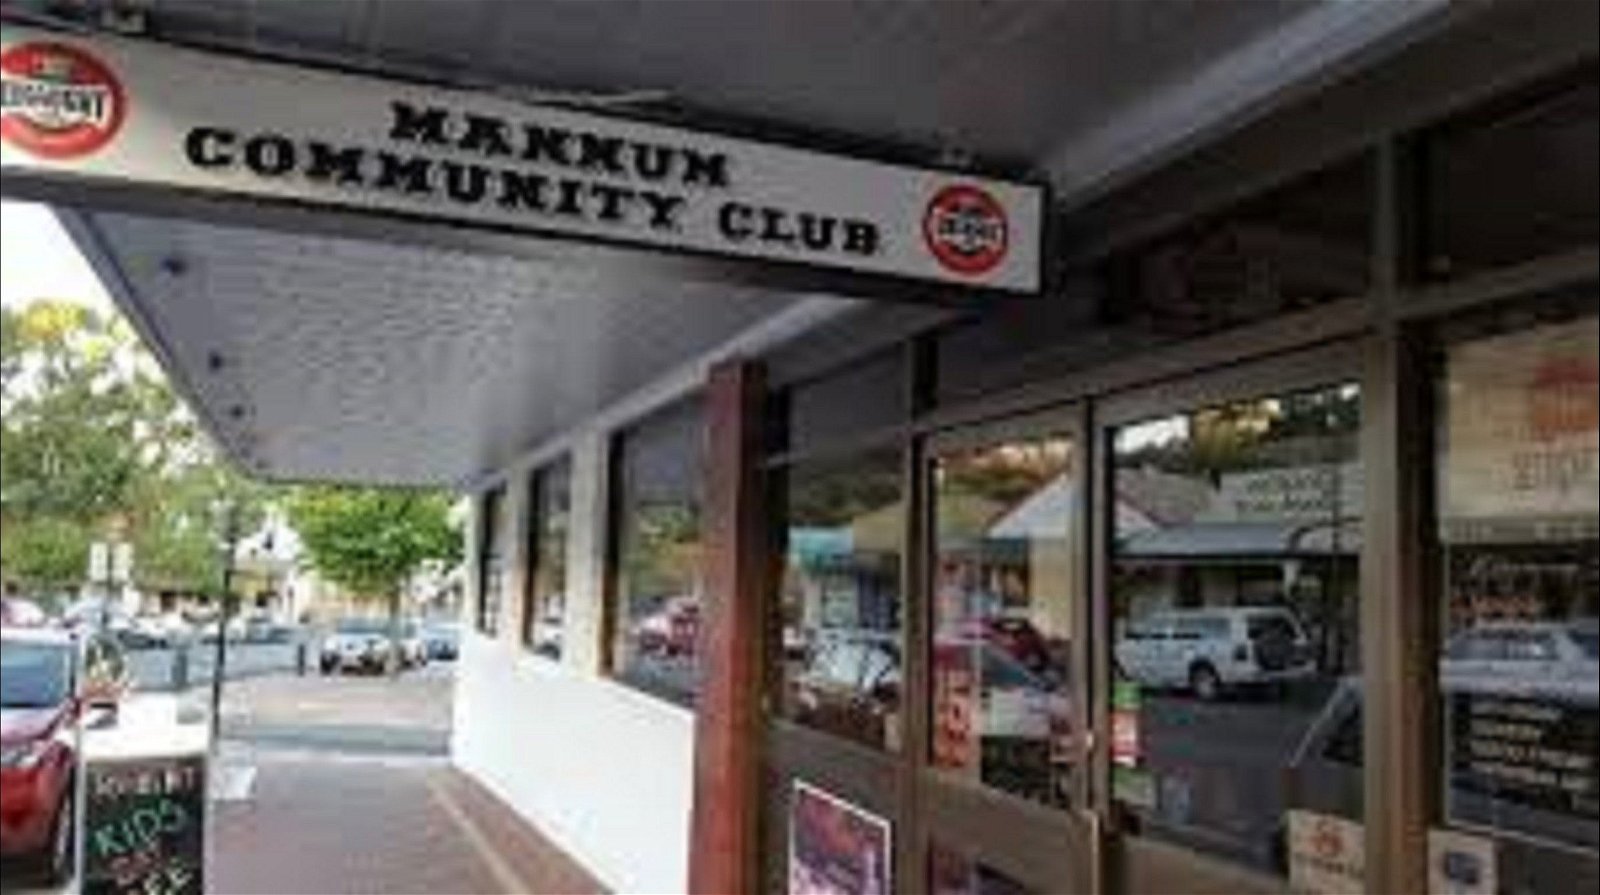 Mannum Community Club - Tourism Gold Coast